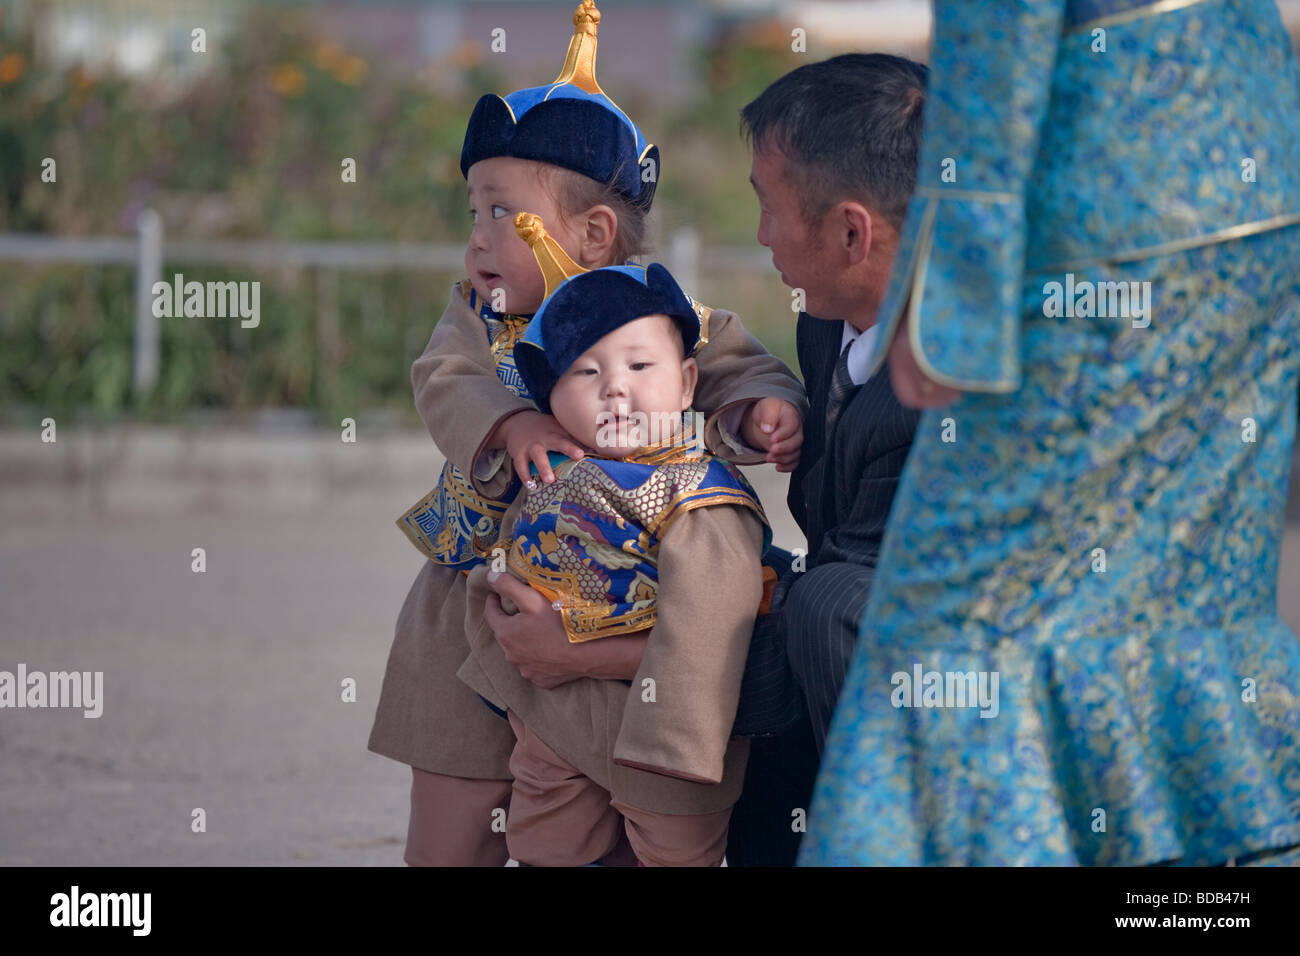 Les jeunes garçons mongol habillés en vêtements traditionnels pour profiter d'une sortie en famille, Oulan-Bator, Mongolie Banque D'Images